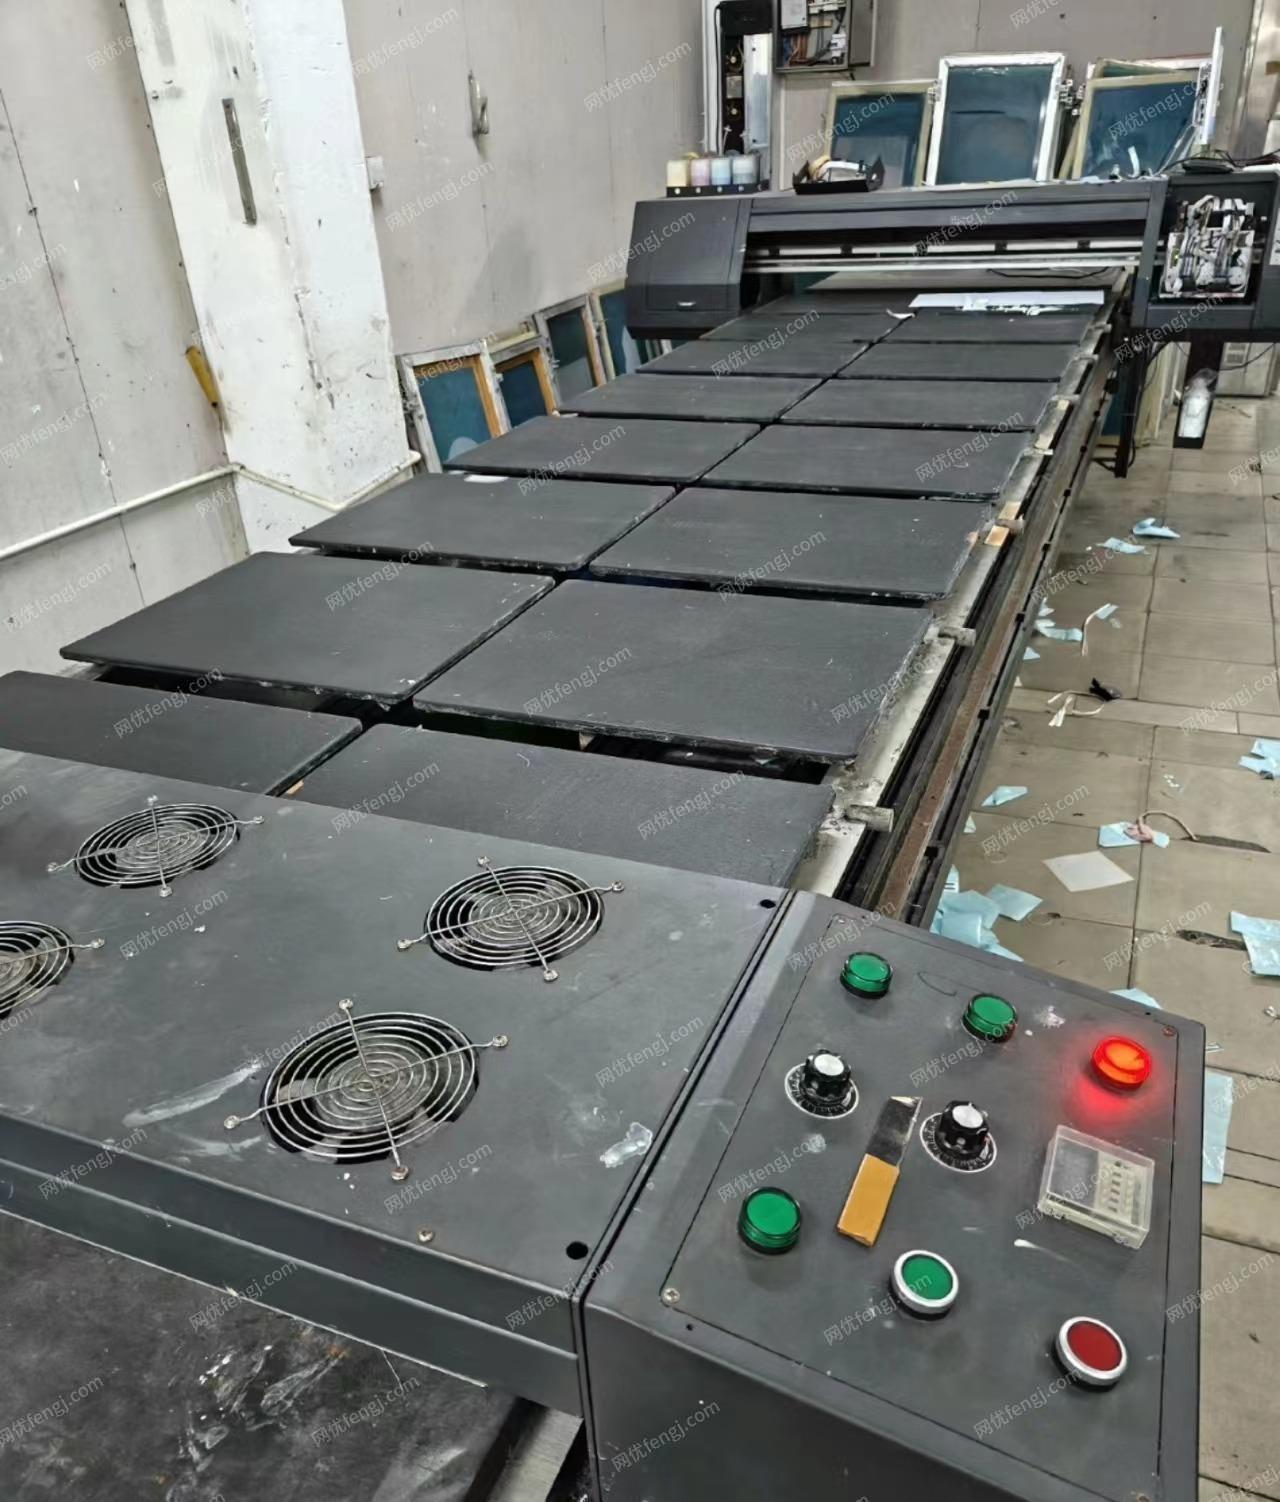 广州工厂数码直喷跑台印花机处理